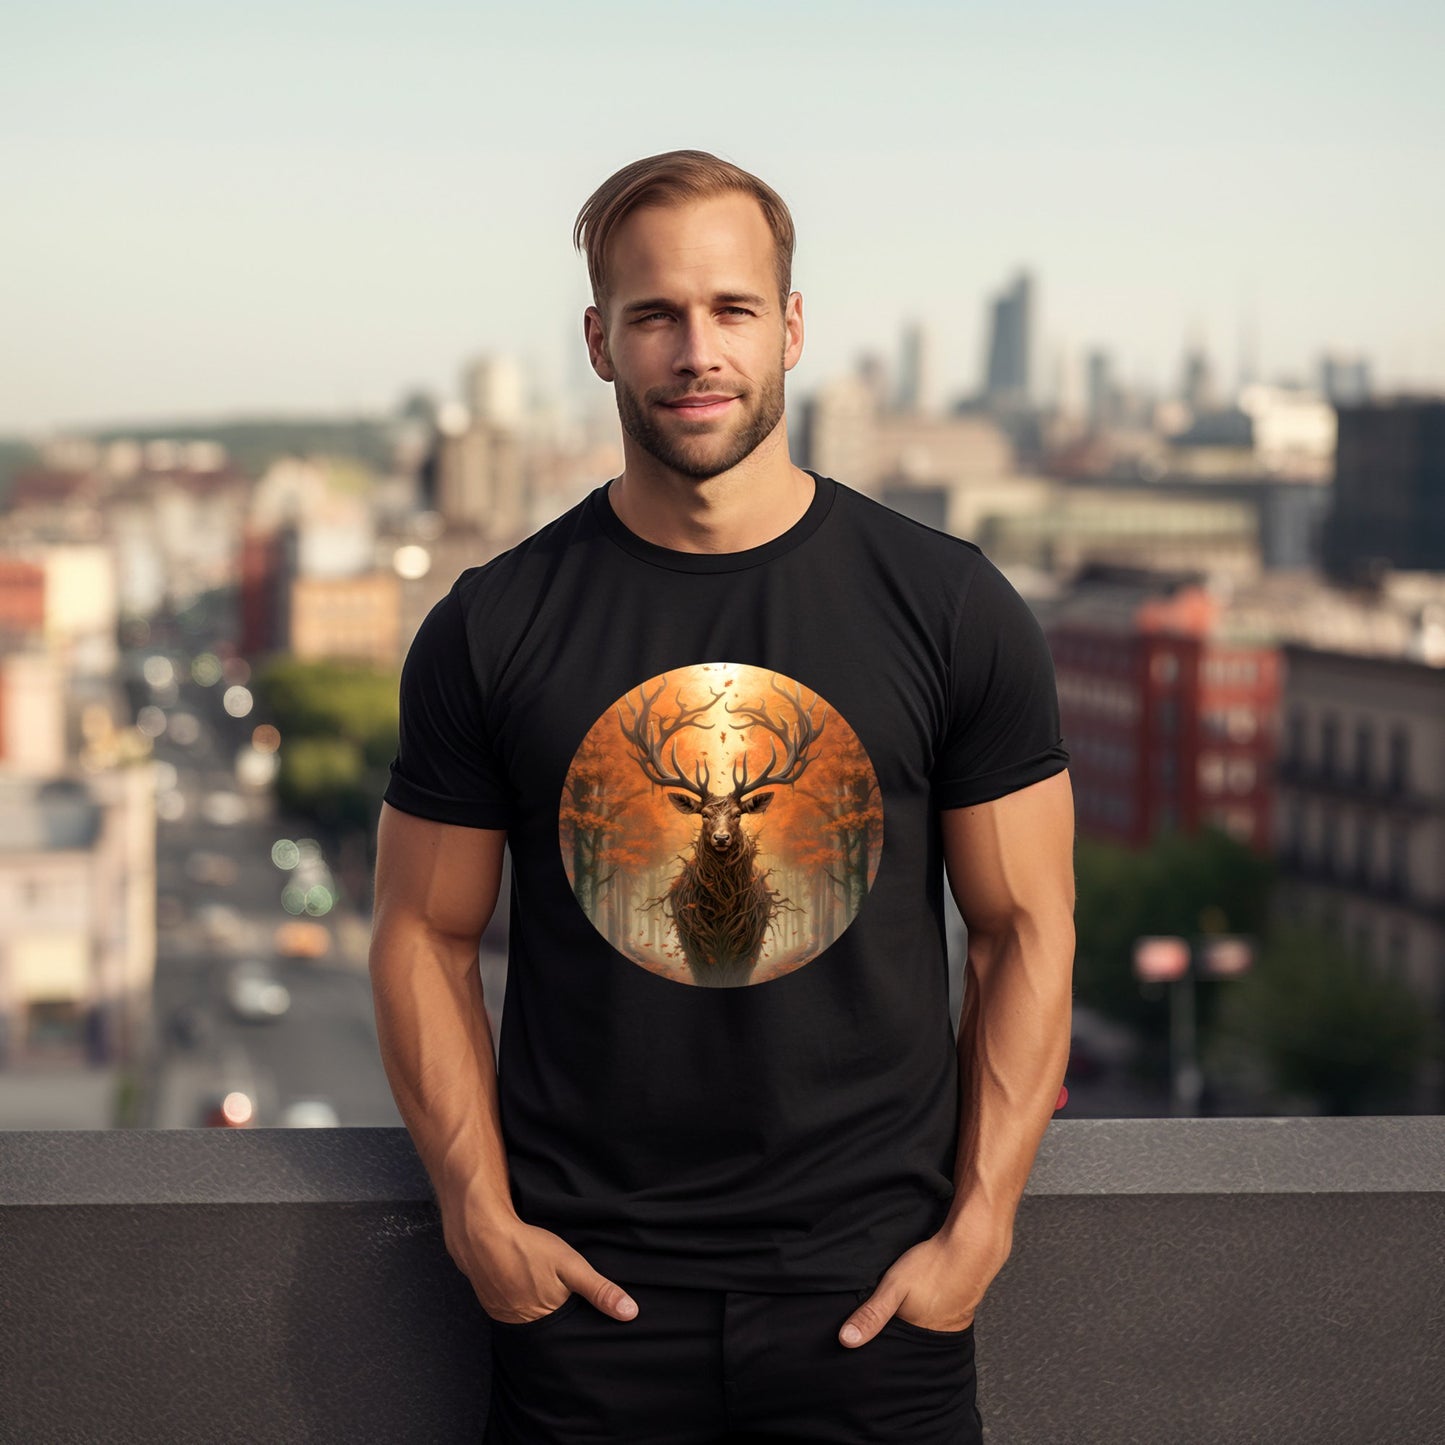 Vyriškis, apsivilkęs unikalų juodą marškinėlį su elegantišku elnio ragų dizainu, stovintis ant miesto stogo su įspūdingu fonu, Designedbyme.lt, Vyriški marškinėliai,Visi produktai